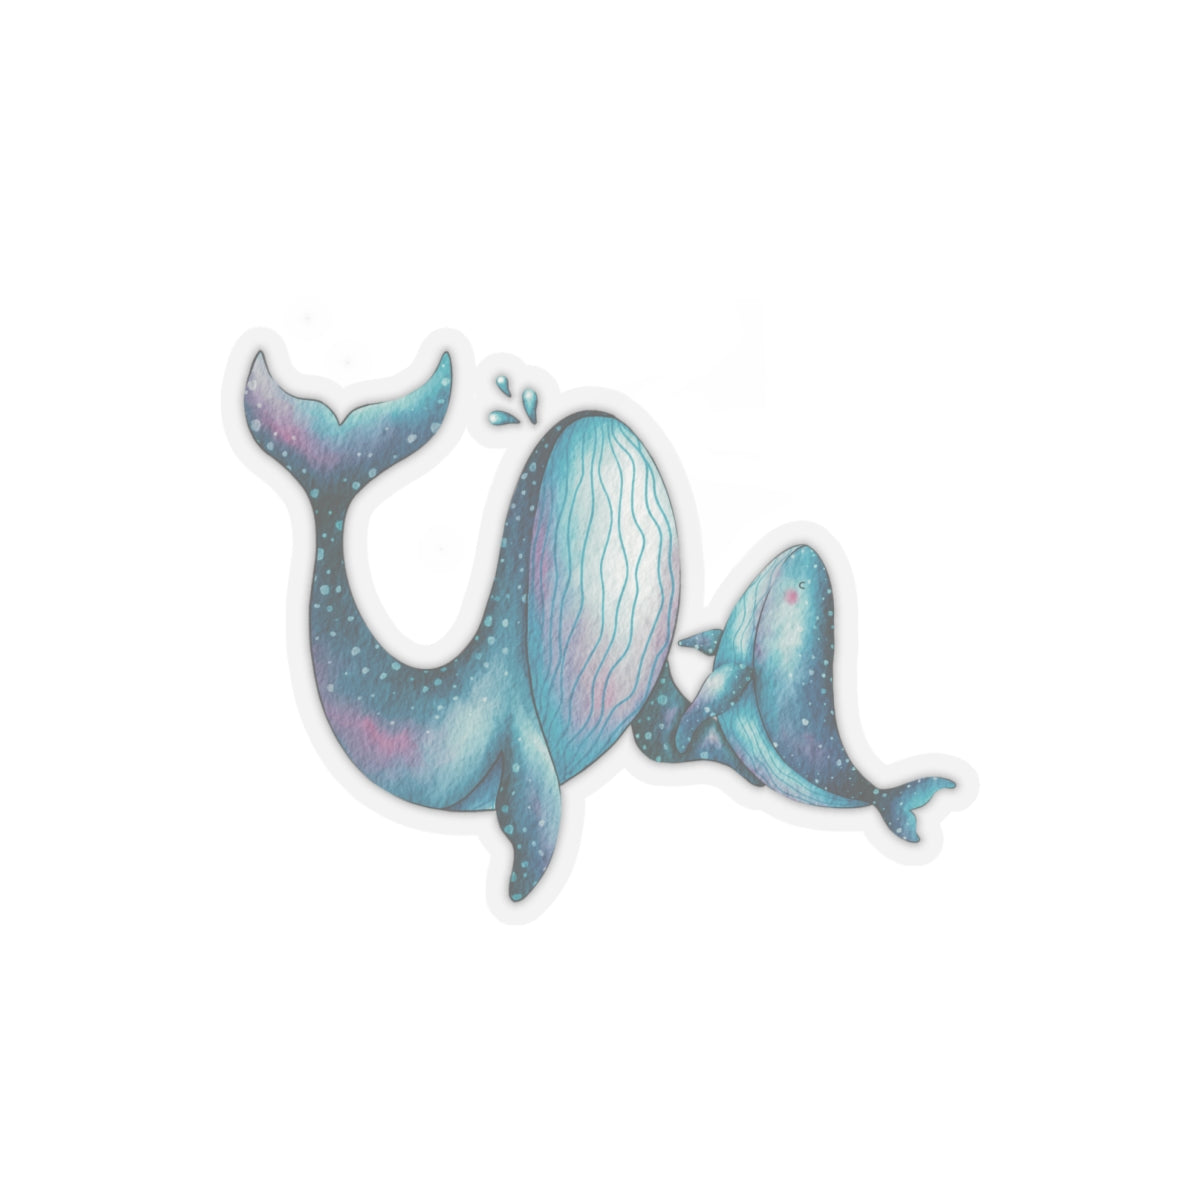 Sticker - Whale